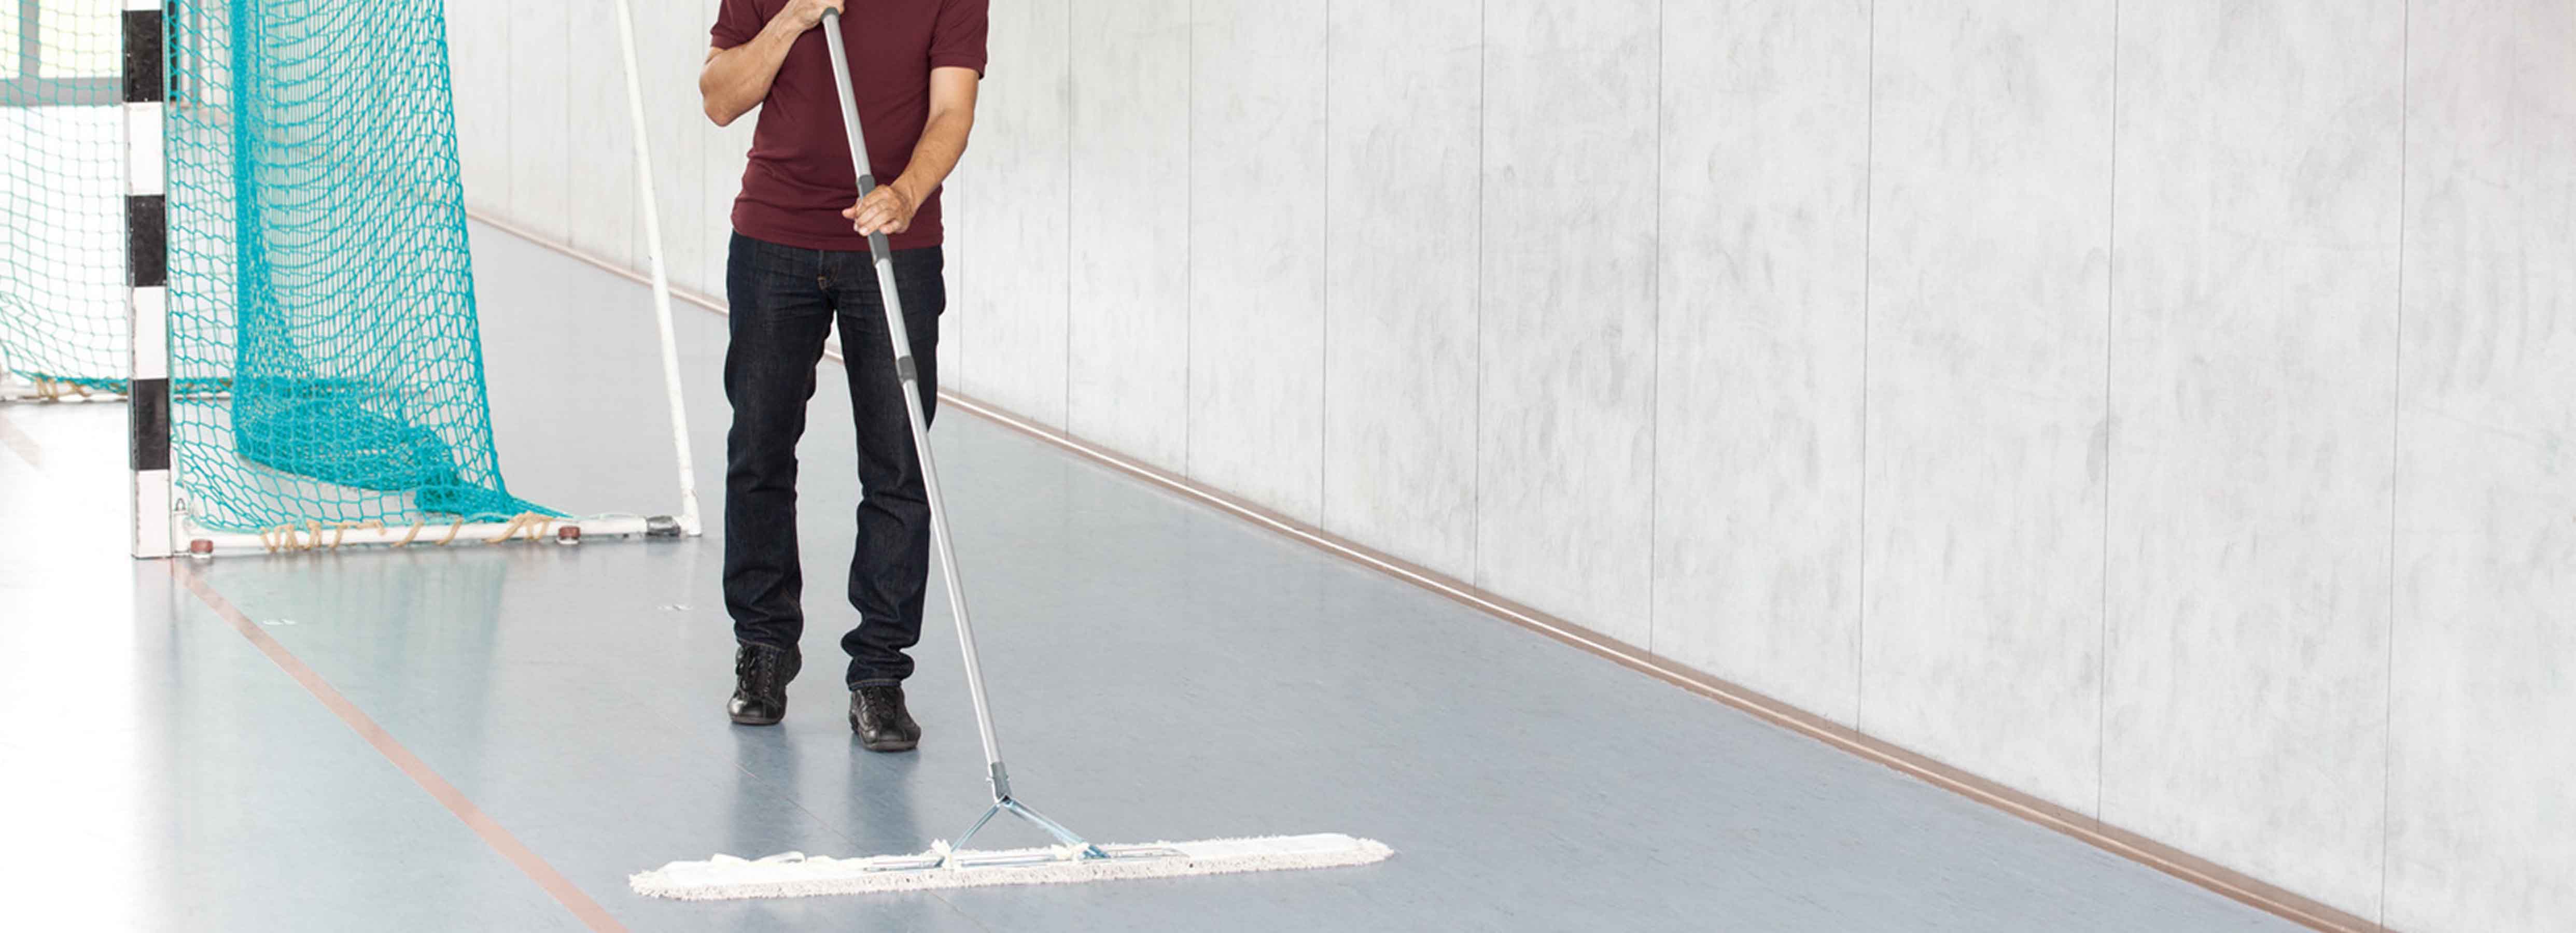 Floor cleaning - dusting